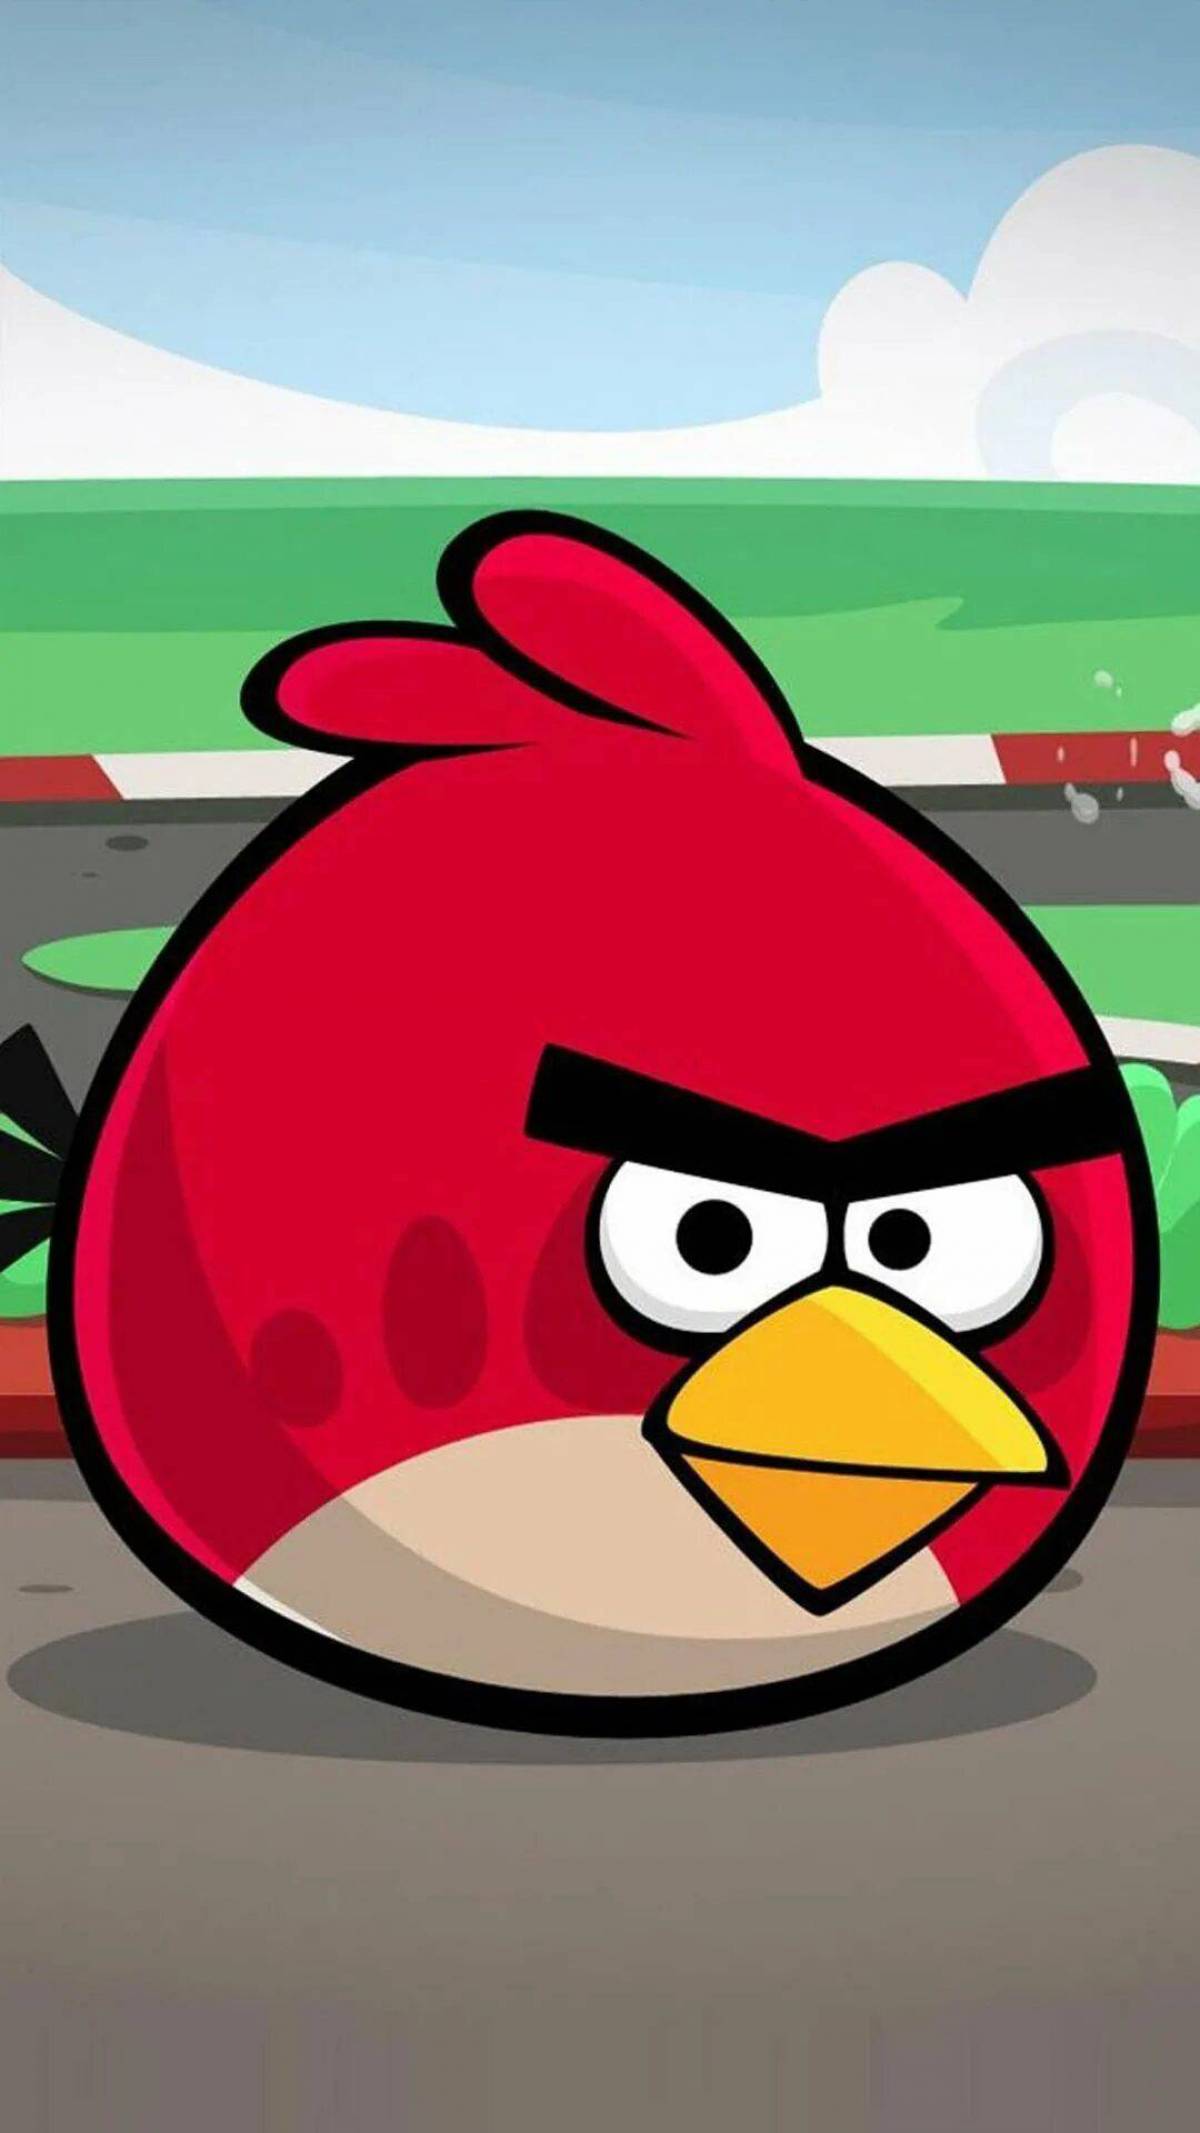 Angry birds сердитый. Энгри бердз злые птички. Игра Angry Birds Red. Энгри берс злая птичка. Ред из Энгри бердз из игры.